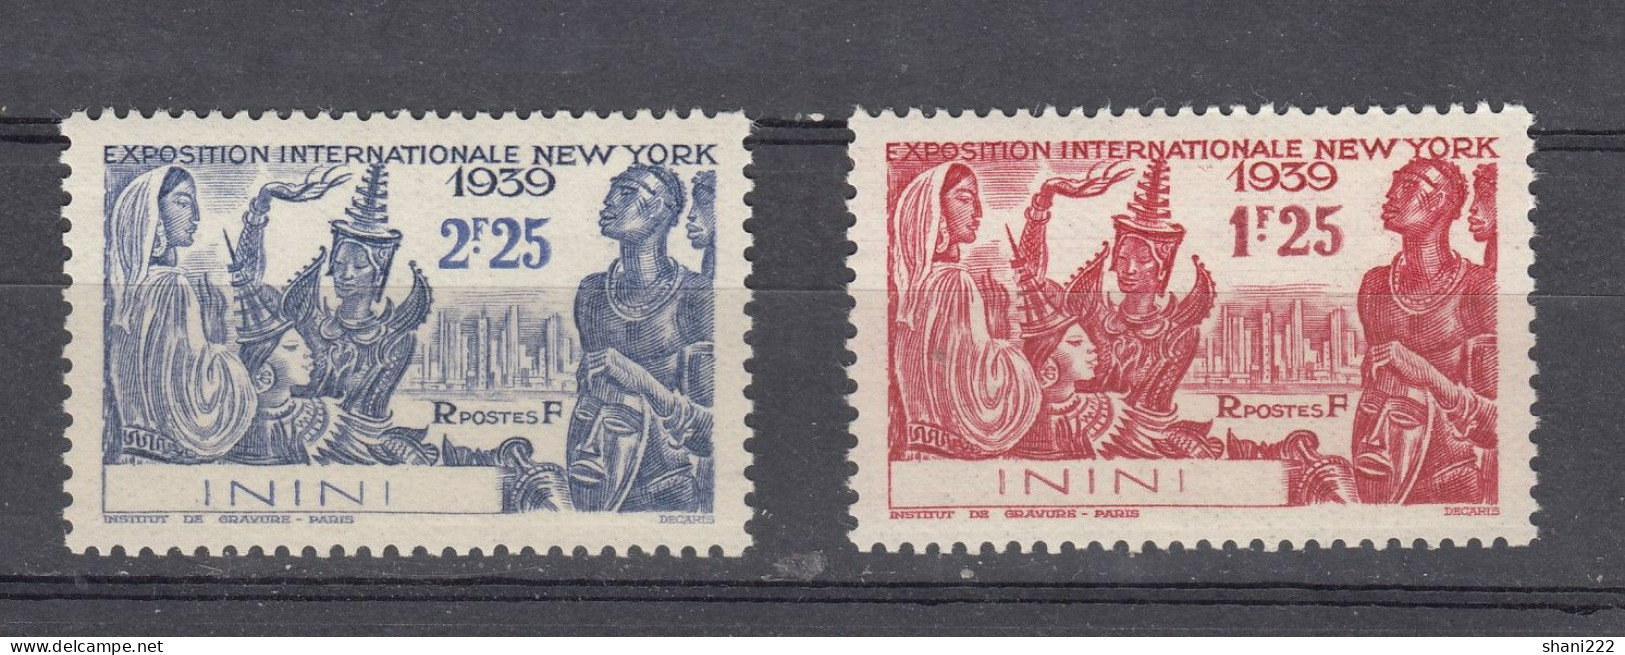 Inini, 1939 - International  Exhibition In New York  MNH (e-84) - Ongebruikt